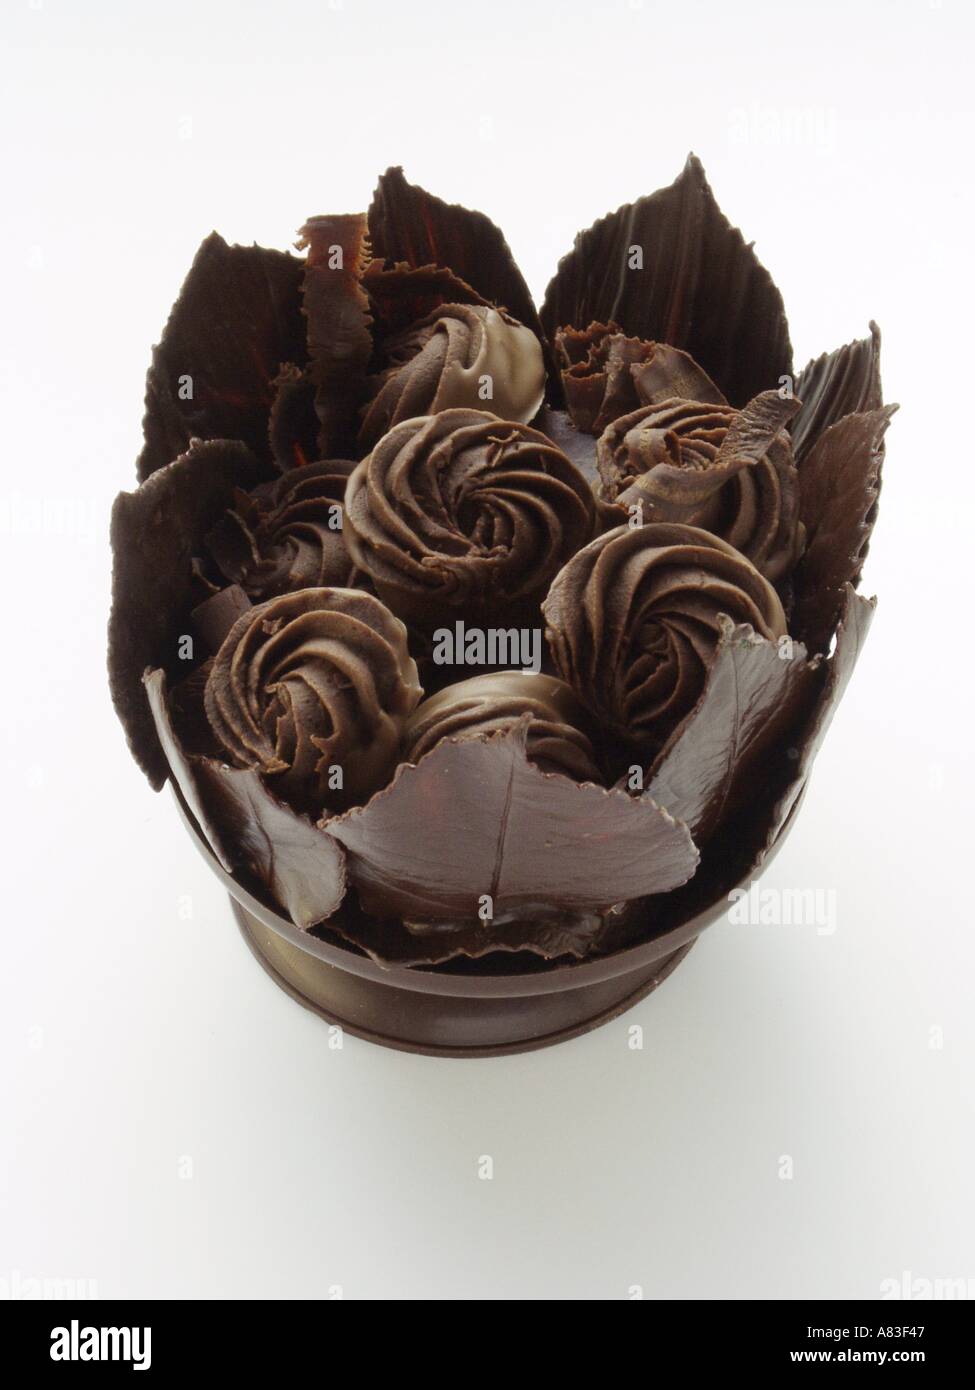 Wirbelte dunklen Schokoladen in Schokolade Korb mit Schokolade Blätter  Stockfotografie - Alamy